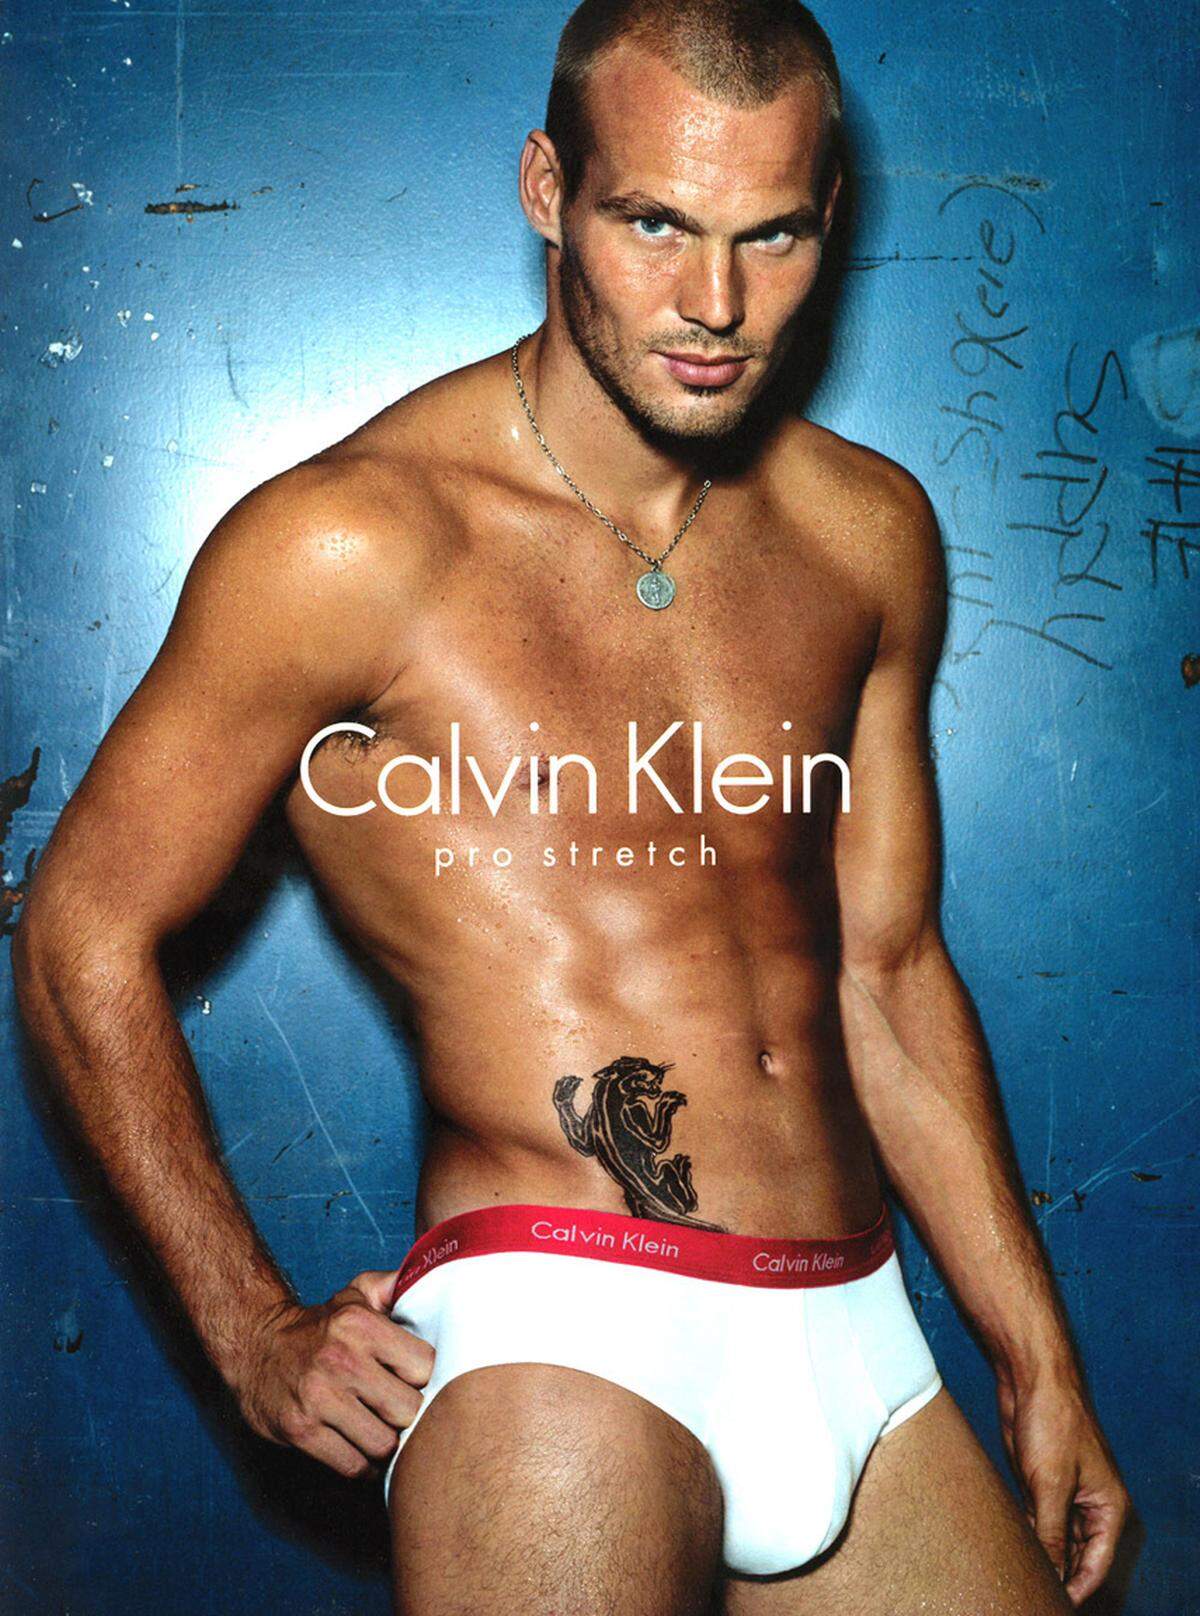 Neben Models und Schauspielern engagiert Calvin Klein aber auch gern Sportler, wie den schwedischen Fußballer Freddie Ljungberg, als Testimonials.